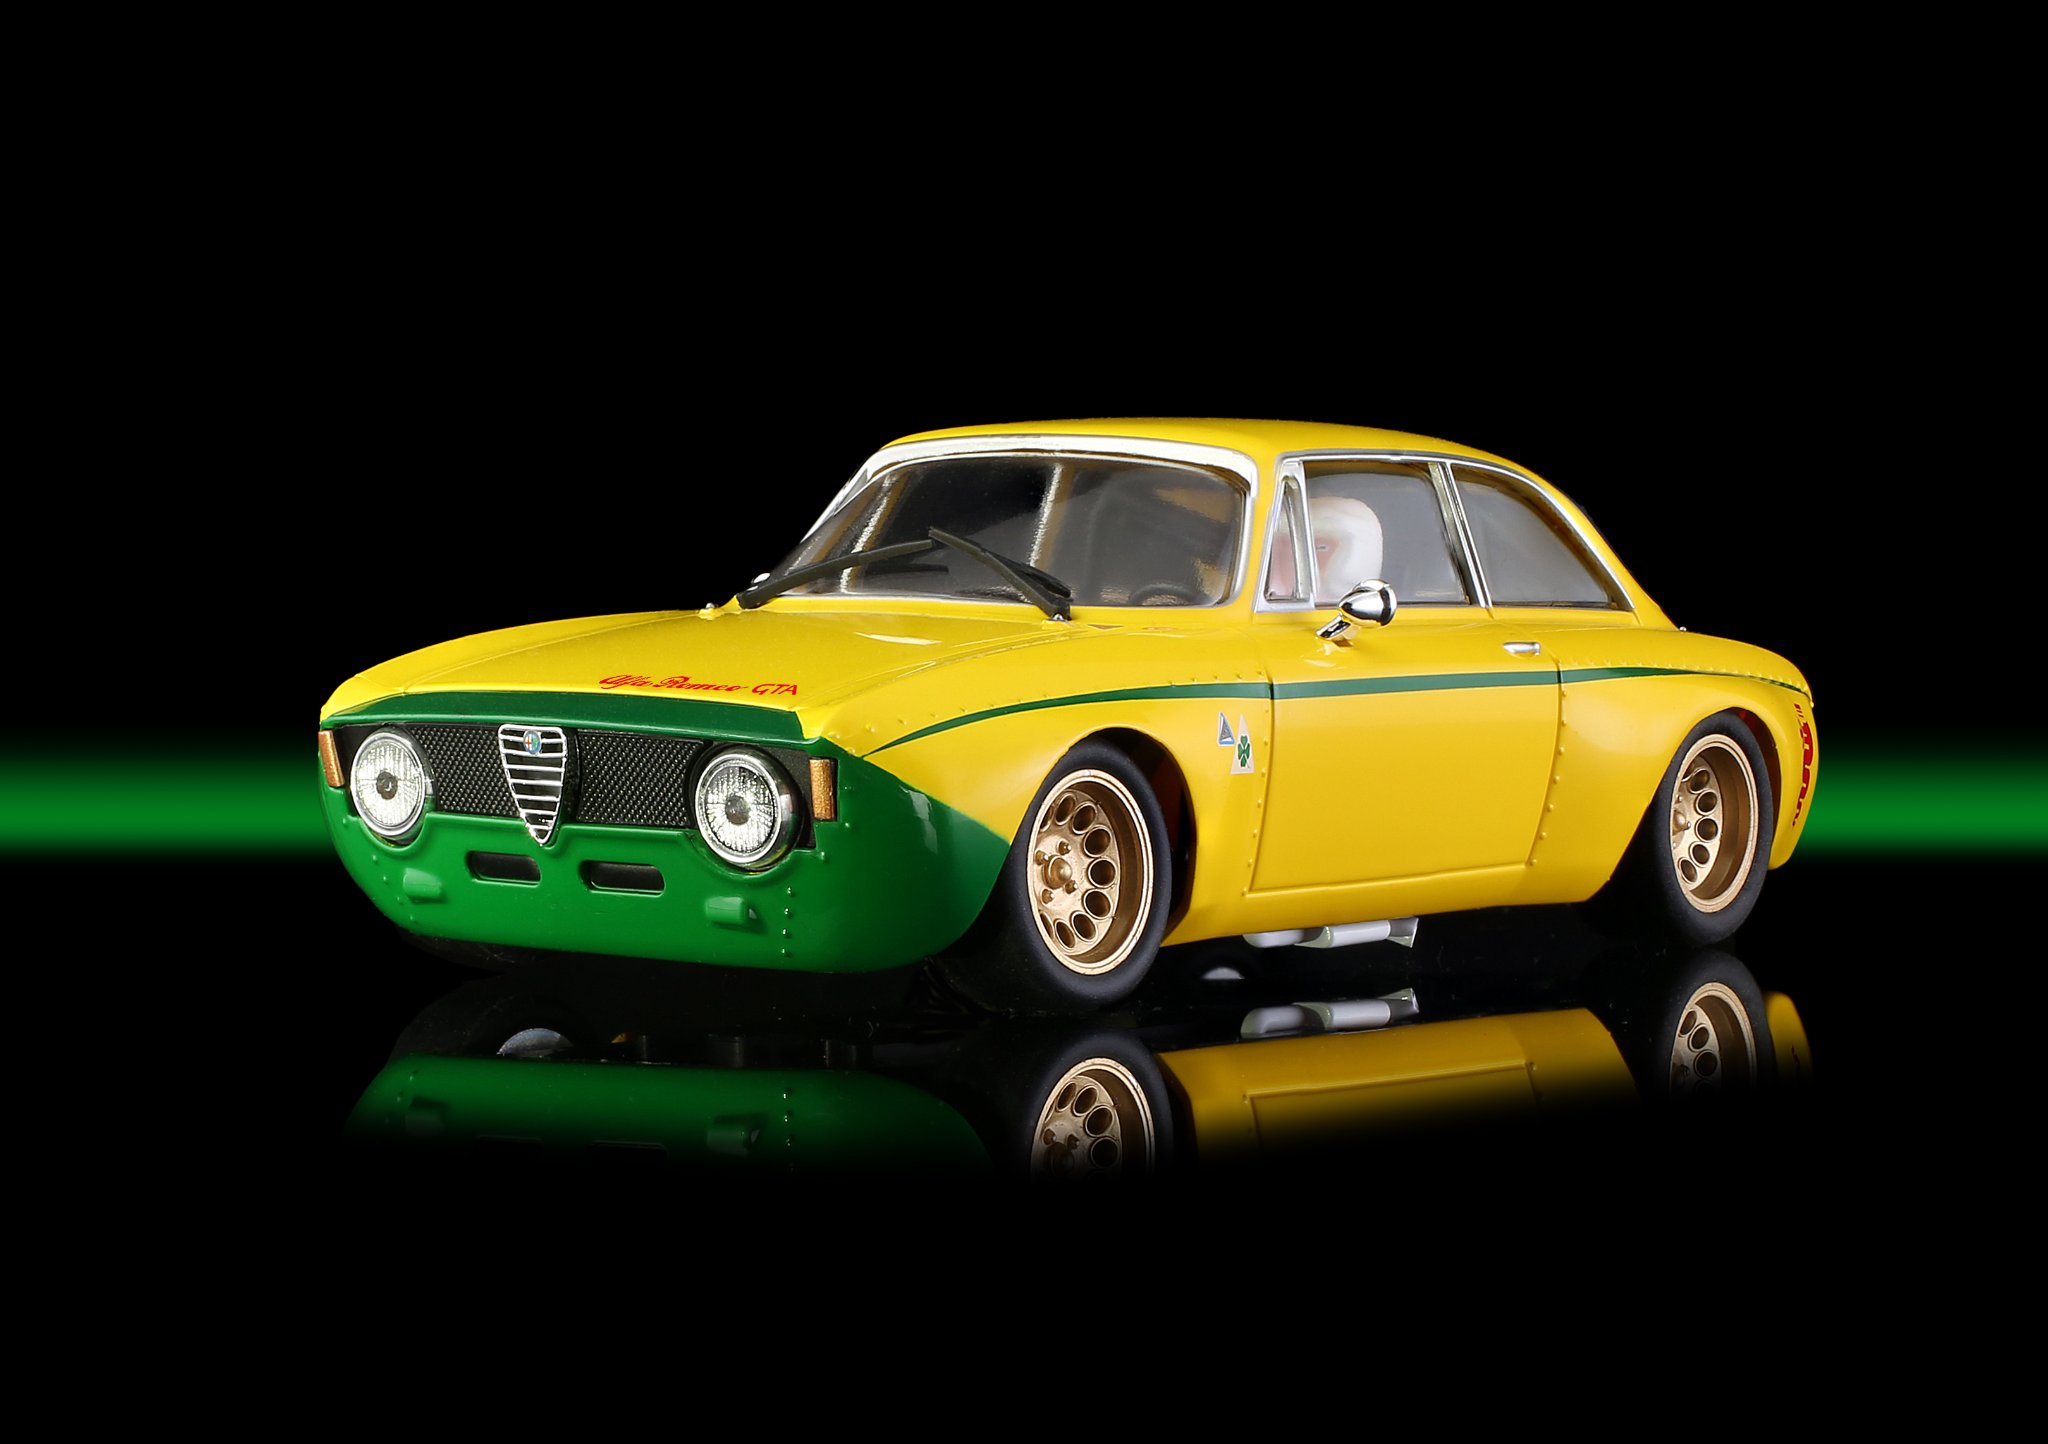 BRM142Y Alfa GTA Yellow and Green Club Car